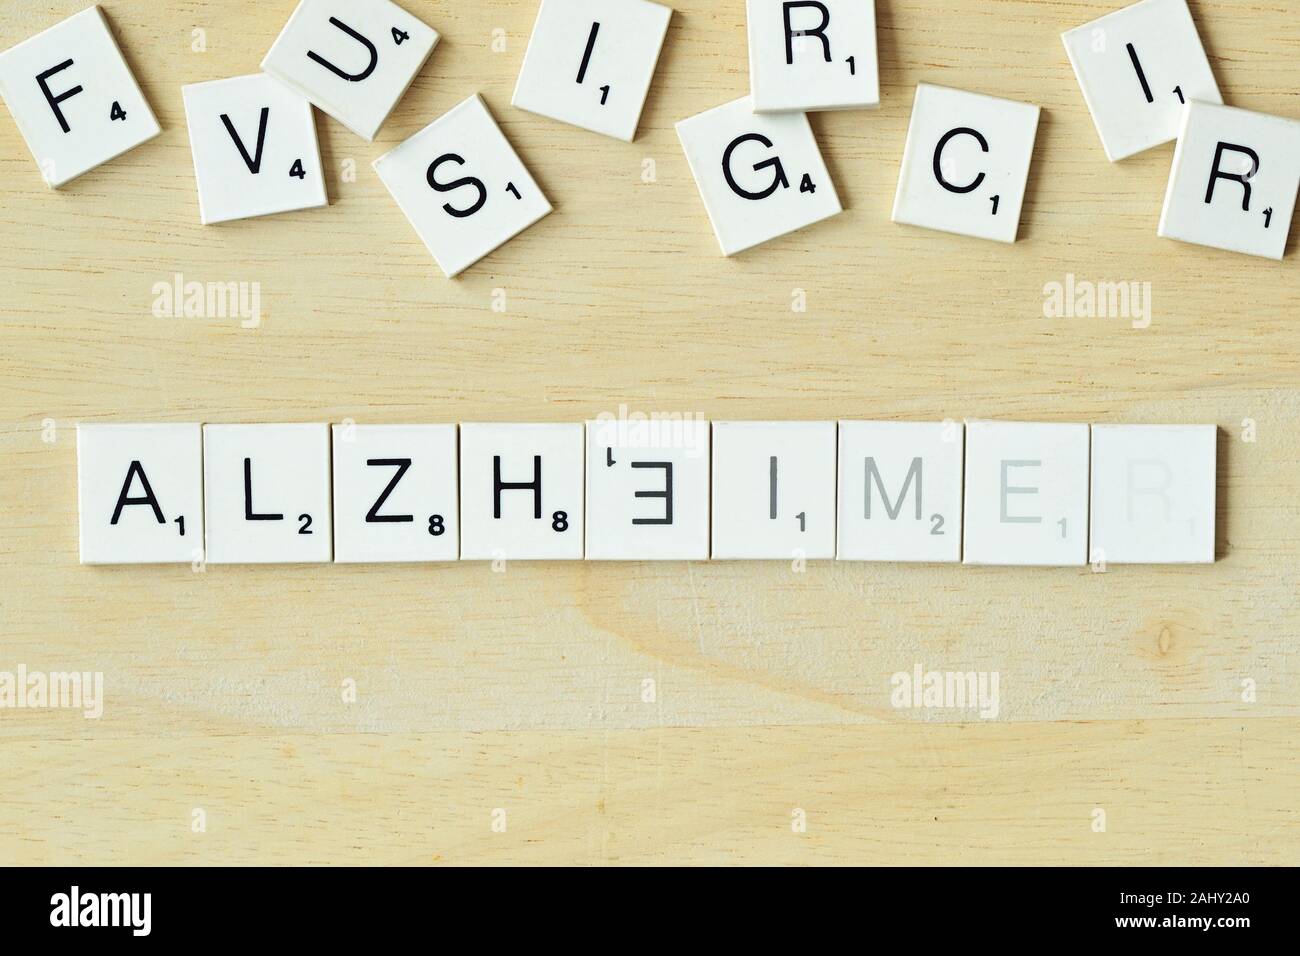 Das Wort Alzheimer mit SCRABBLE-Spiel Buchstaben - Begriff des verblassenden Erinnerungen geschrieben Stockfoto